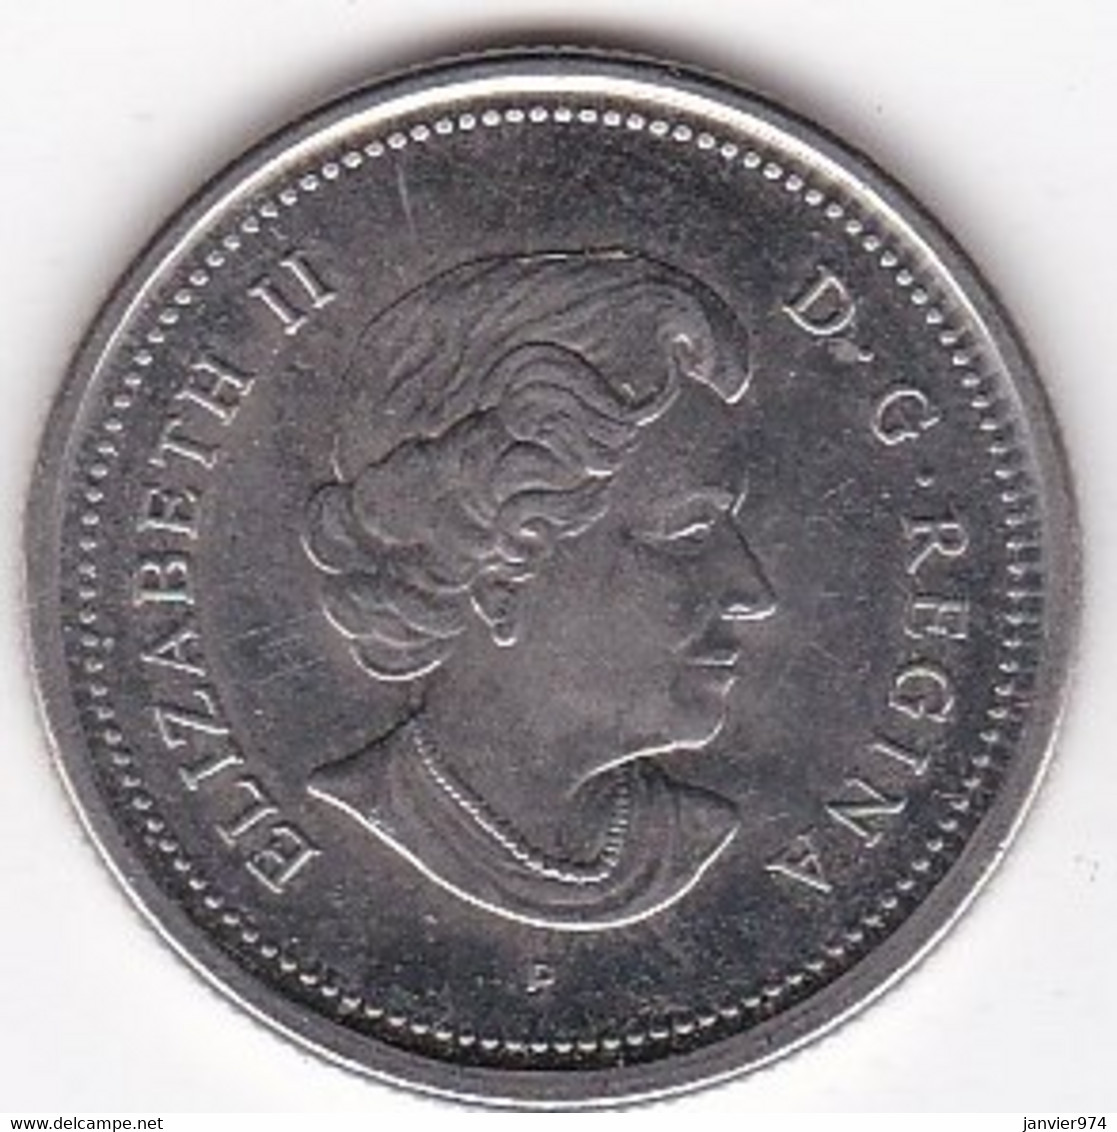 Canada 25 Cents 2003 P, Elizabeth II, En Acier Plaqué Nickel, KM# 493, Superbe - Canada